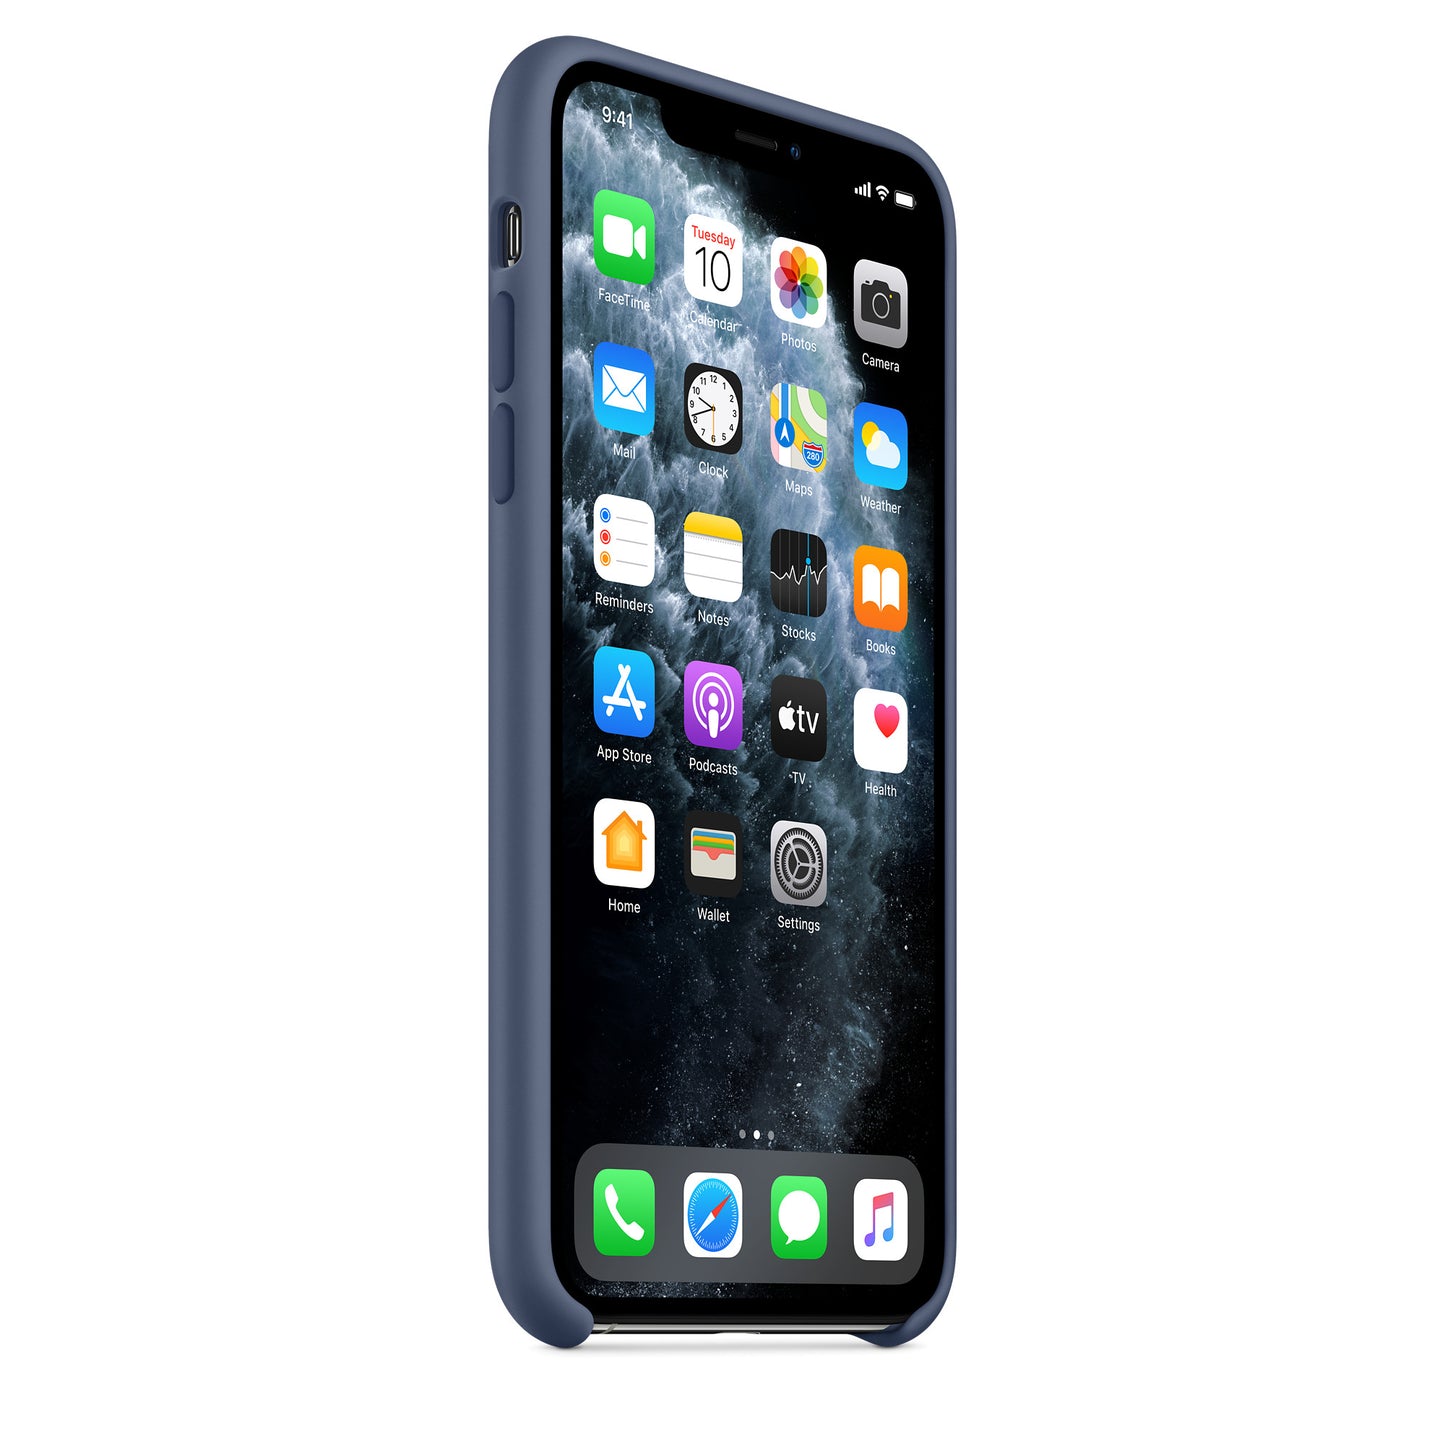 Apple iPhone 11 Pro Max Silikon Case, Alaska Blau